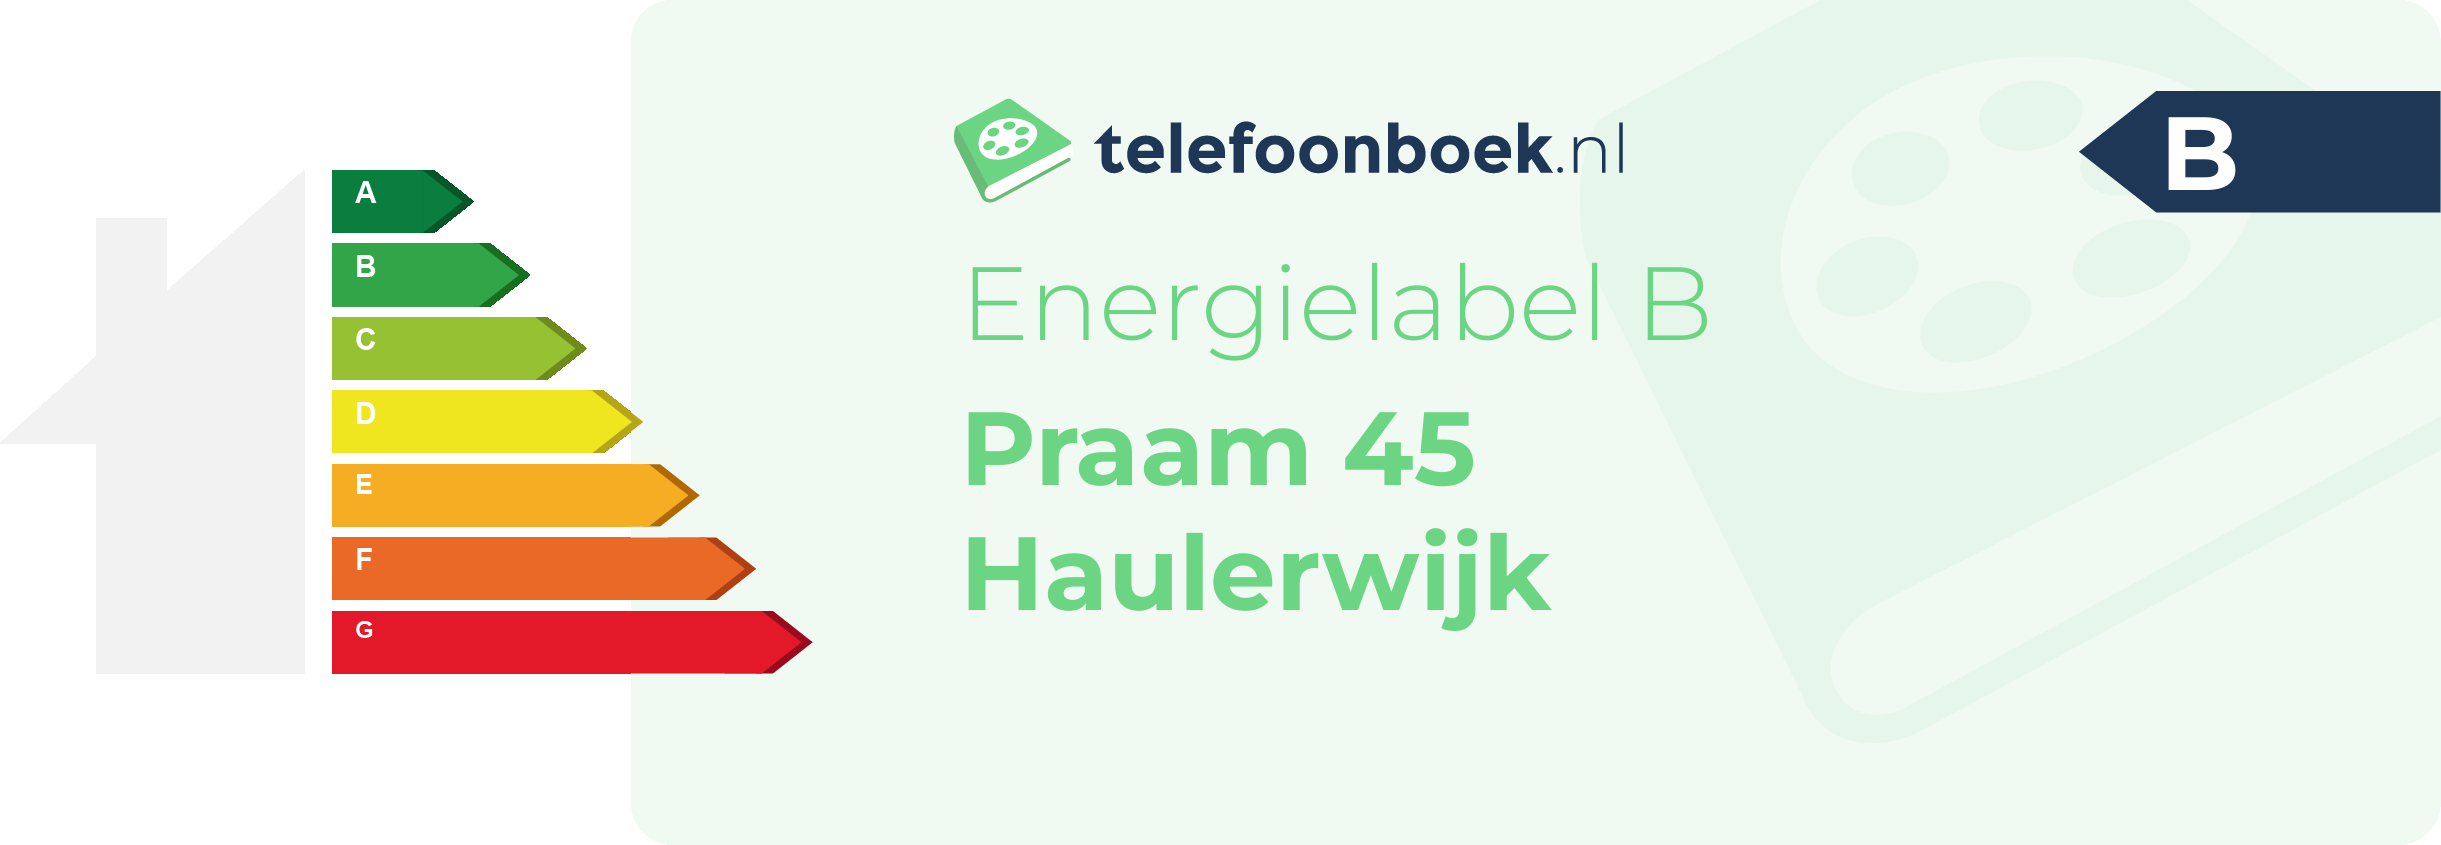 Energielabel Praam 45 Haulerwijk